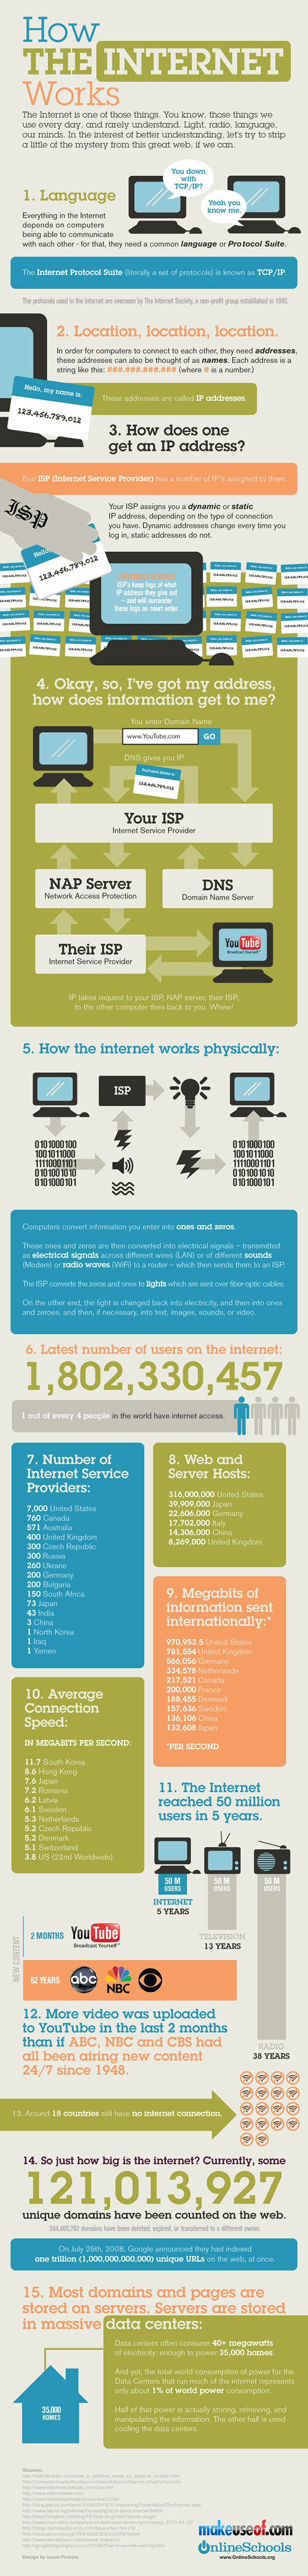 Infografia sobre cómo funciona Internet y cifras sobre el uso de Internet